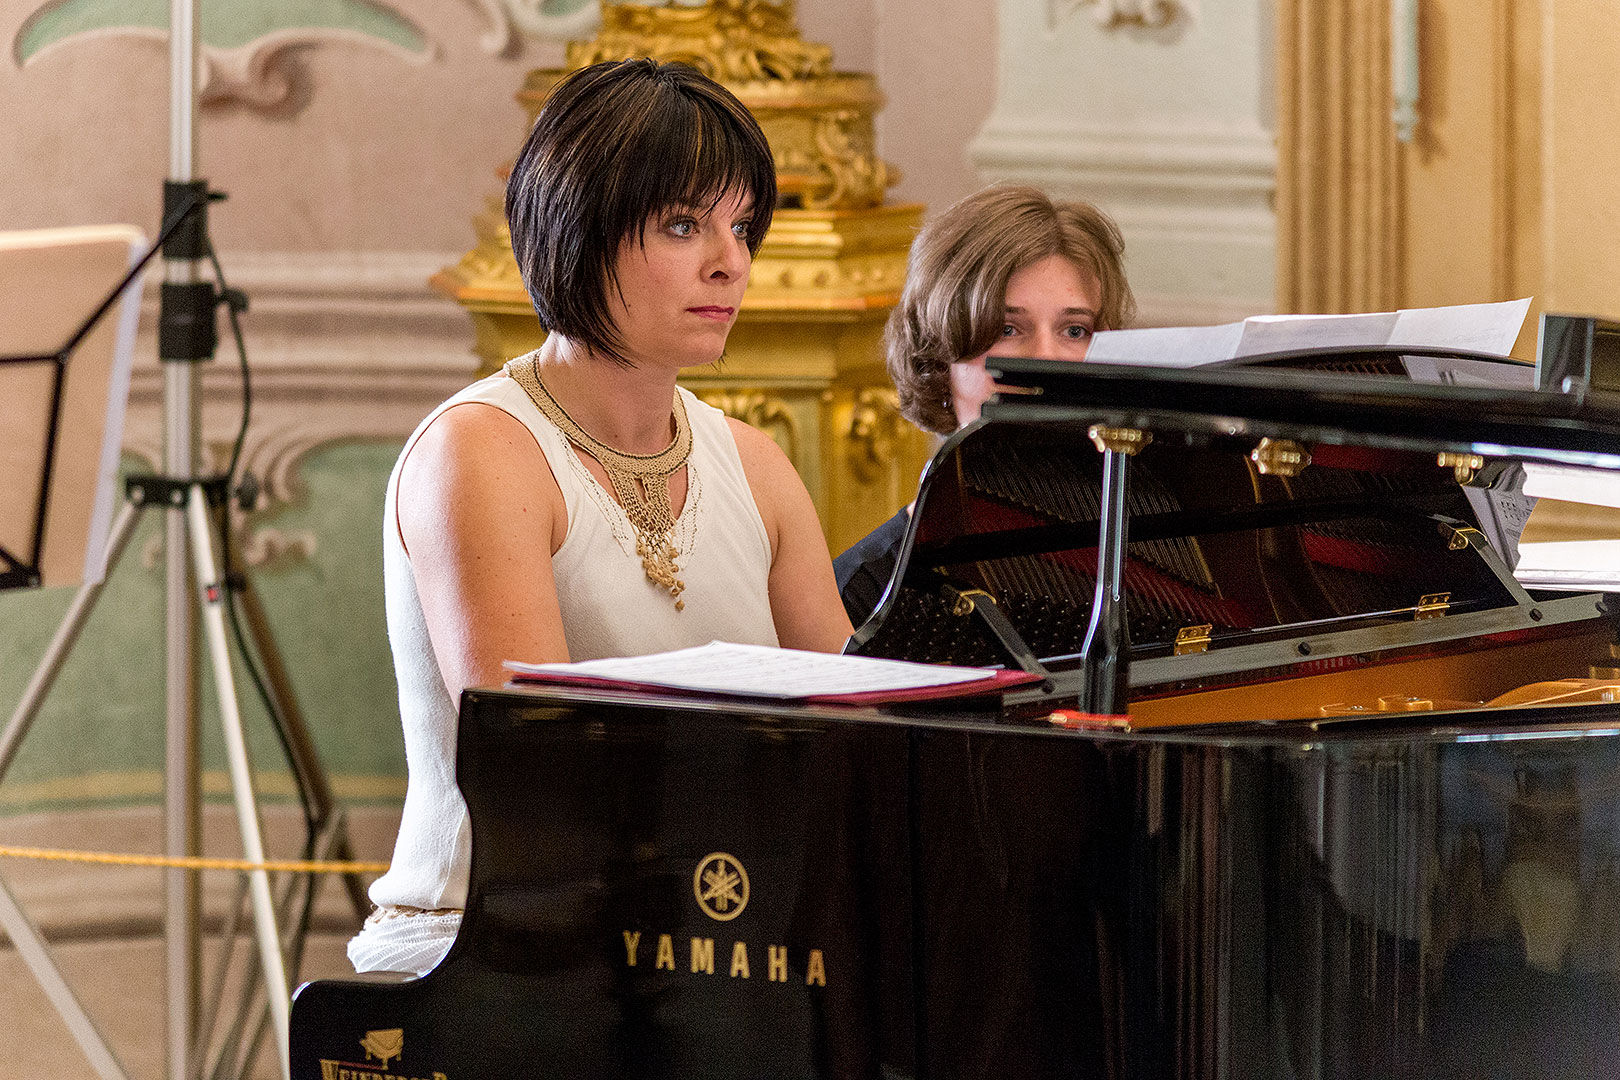 Jitka Hosprová (viola) and Jitka Čechová (piano), 3.7.2014, Chamber Music Festival Český Krumlov